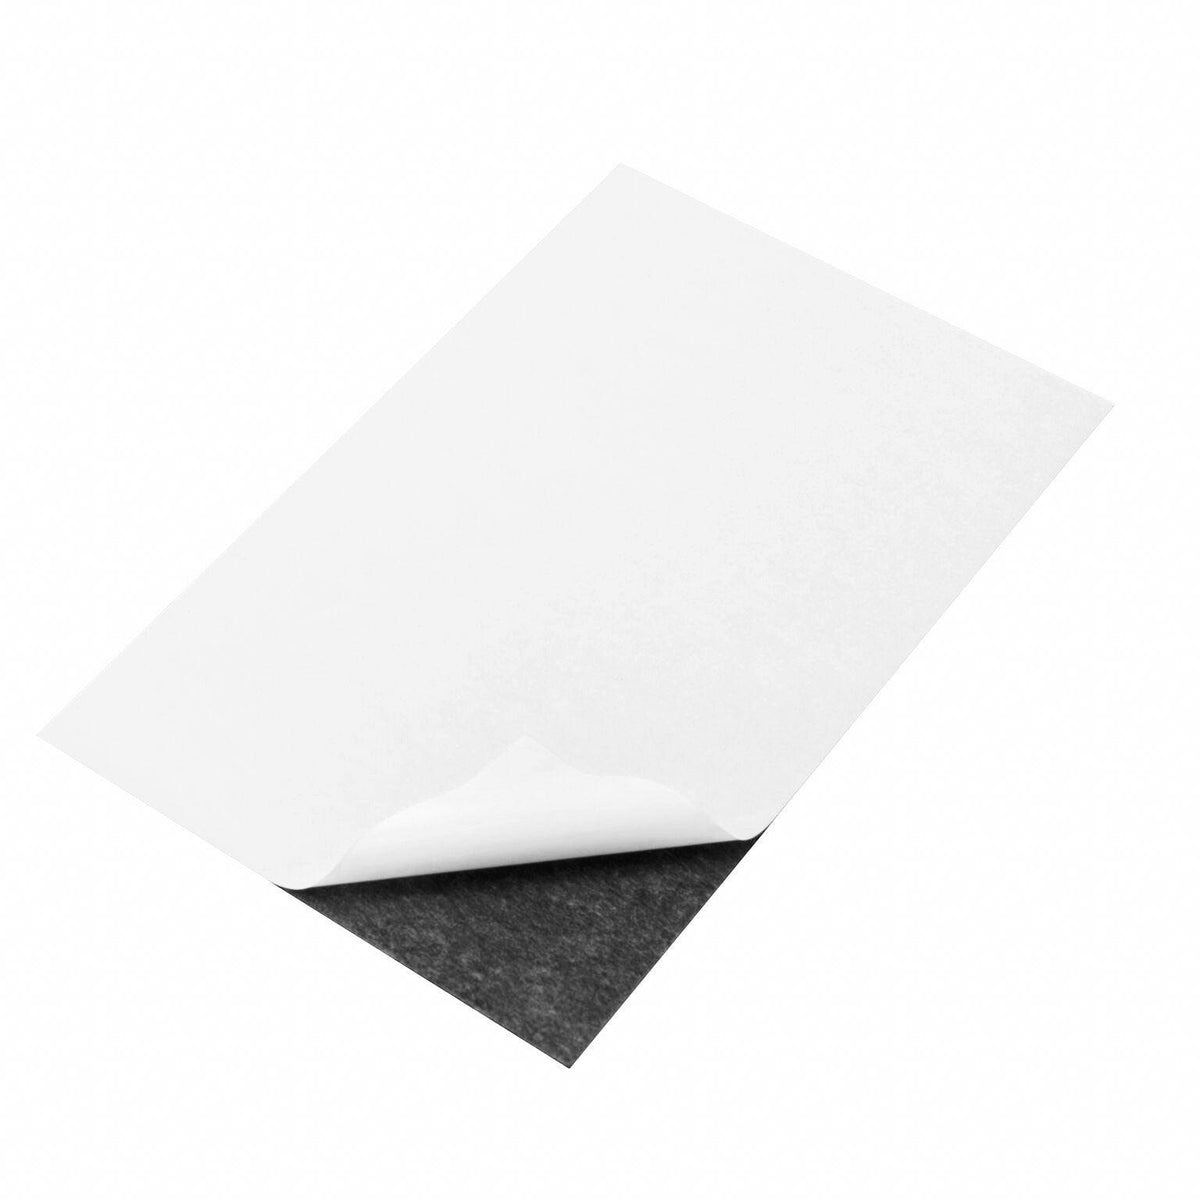 15cmX10cm White Matt InkJet Magnetic Printable Flexible Fridge Magnet Paper  5 pc